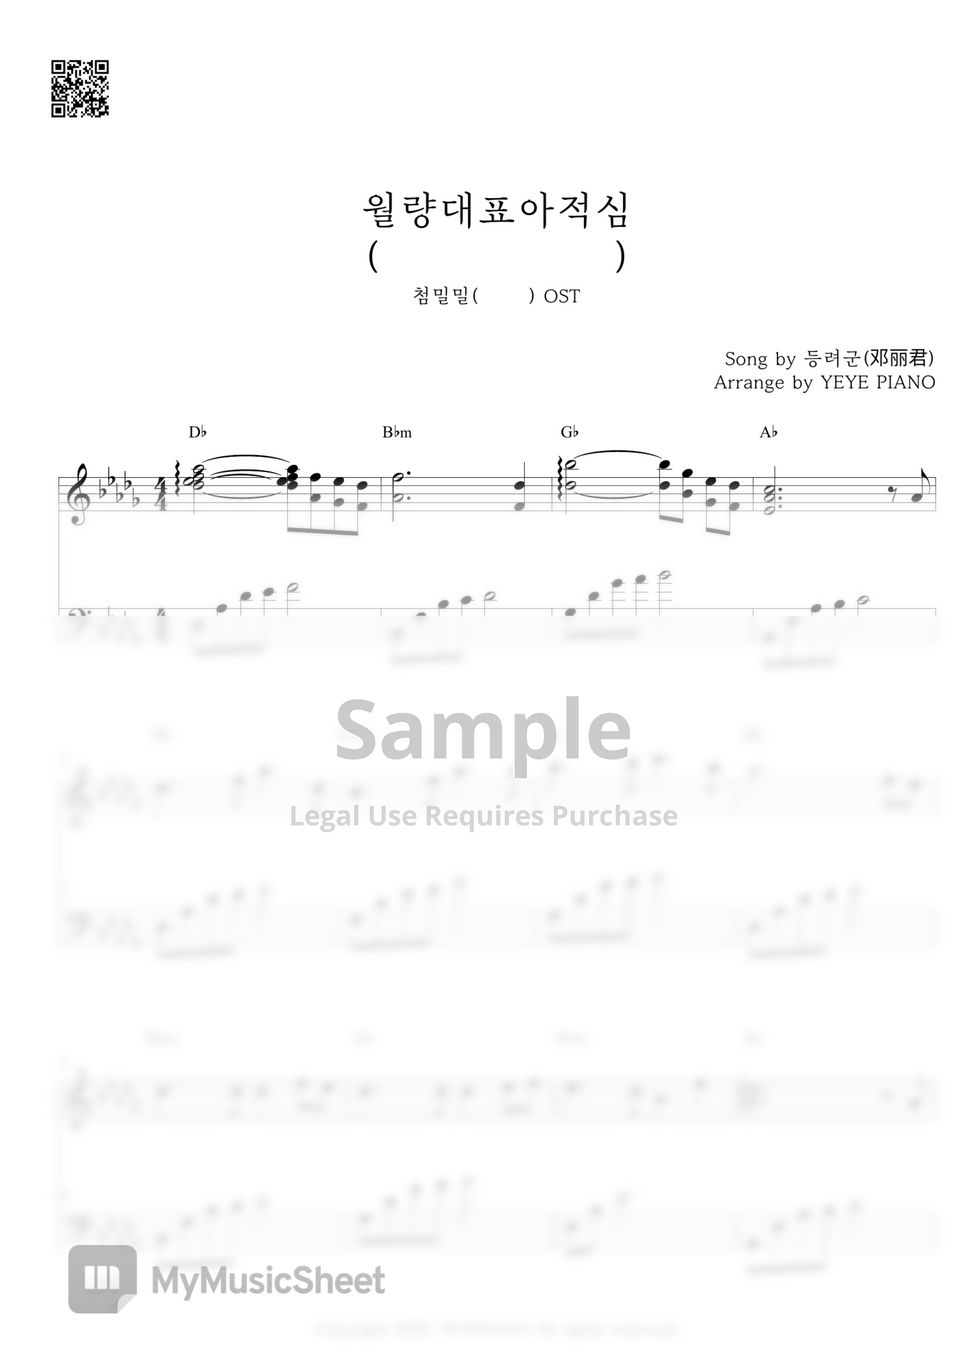 鄧麗君(Teresa Teng) - 月亮代表我的心(The Moon Represents My Heart) (甛蜜蜜 OST) by 예예피아노(YEYE PIANO)